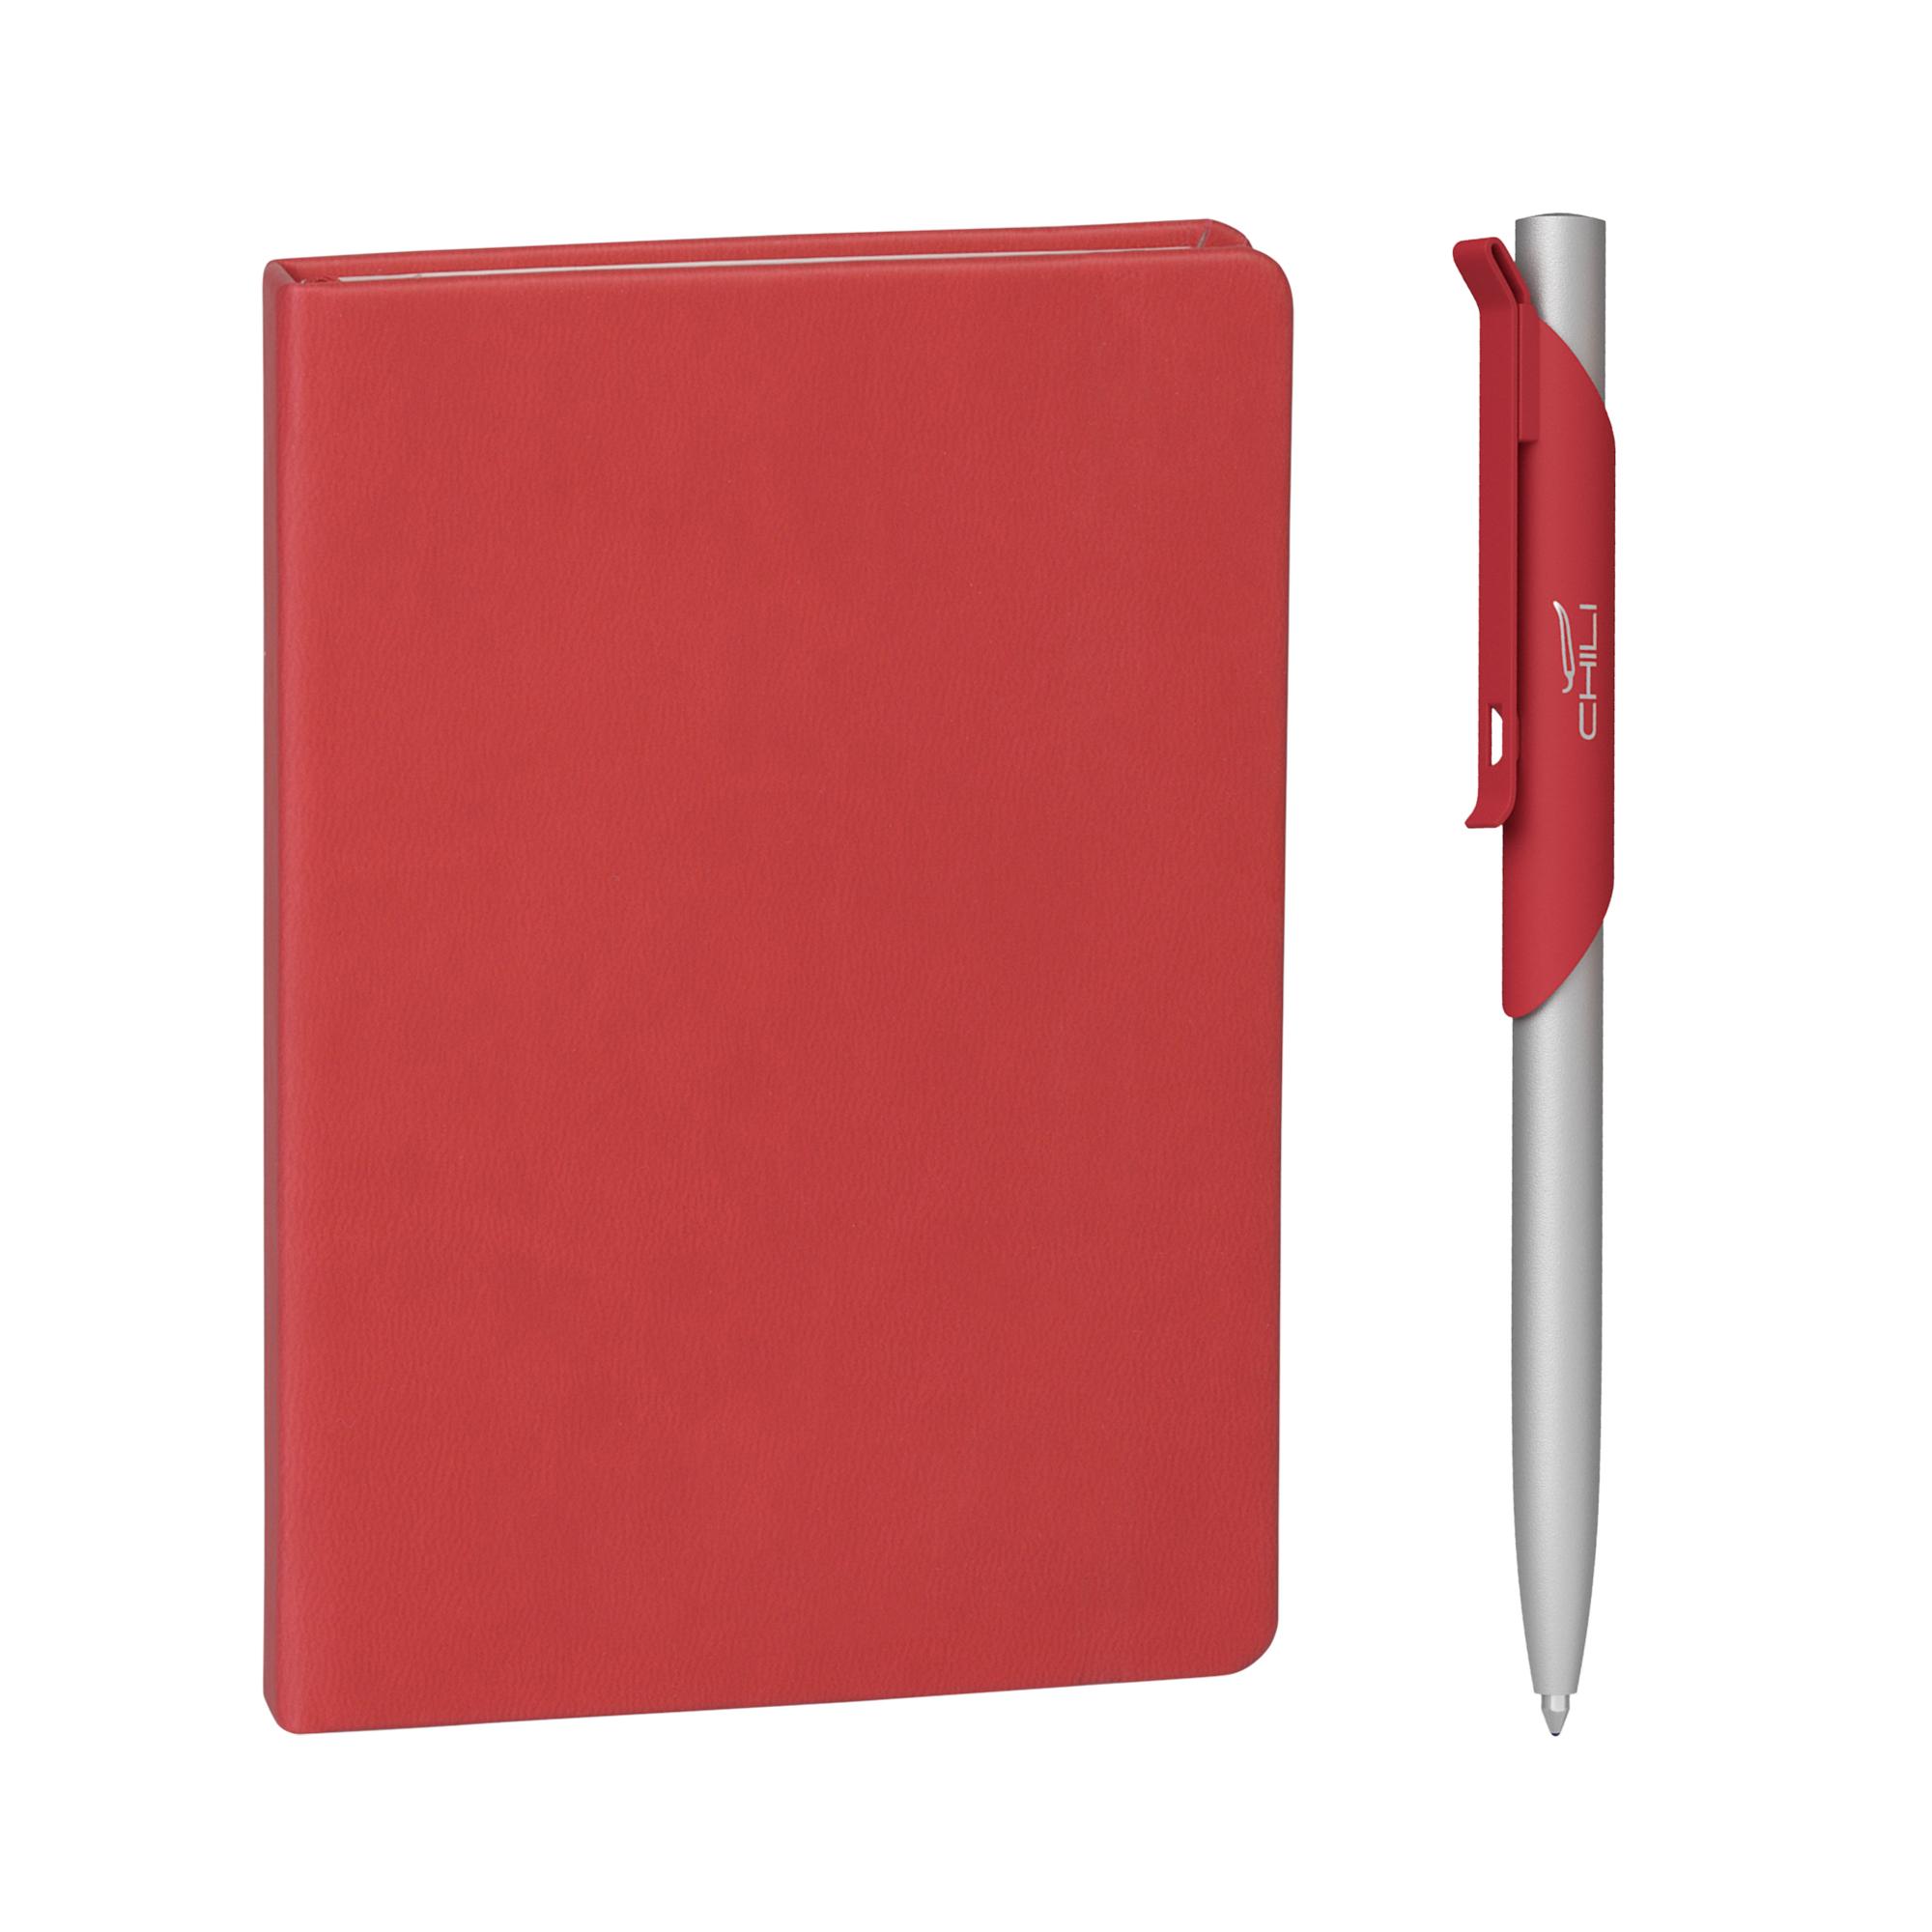 Подарочный набор "Корсика", покрытие soft touch, цвет красный, фото 1